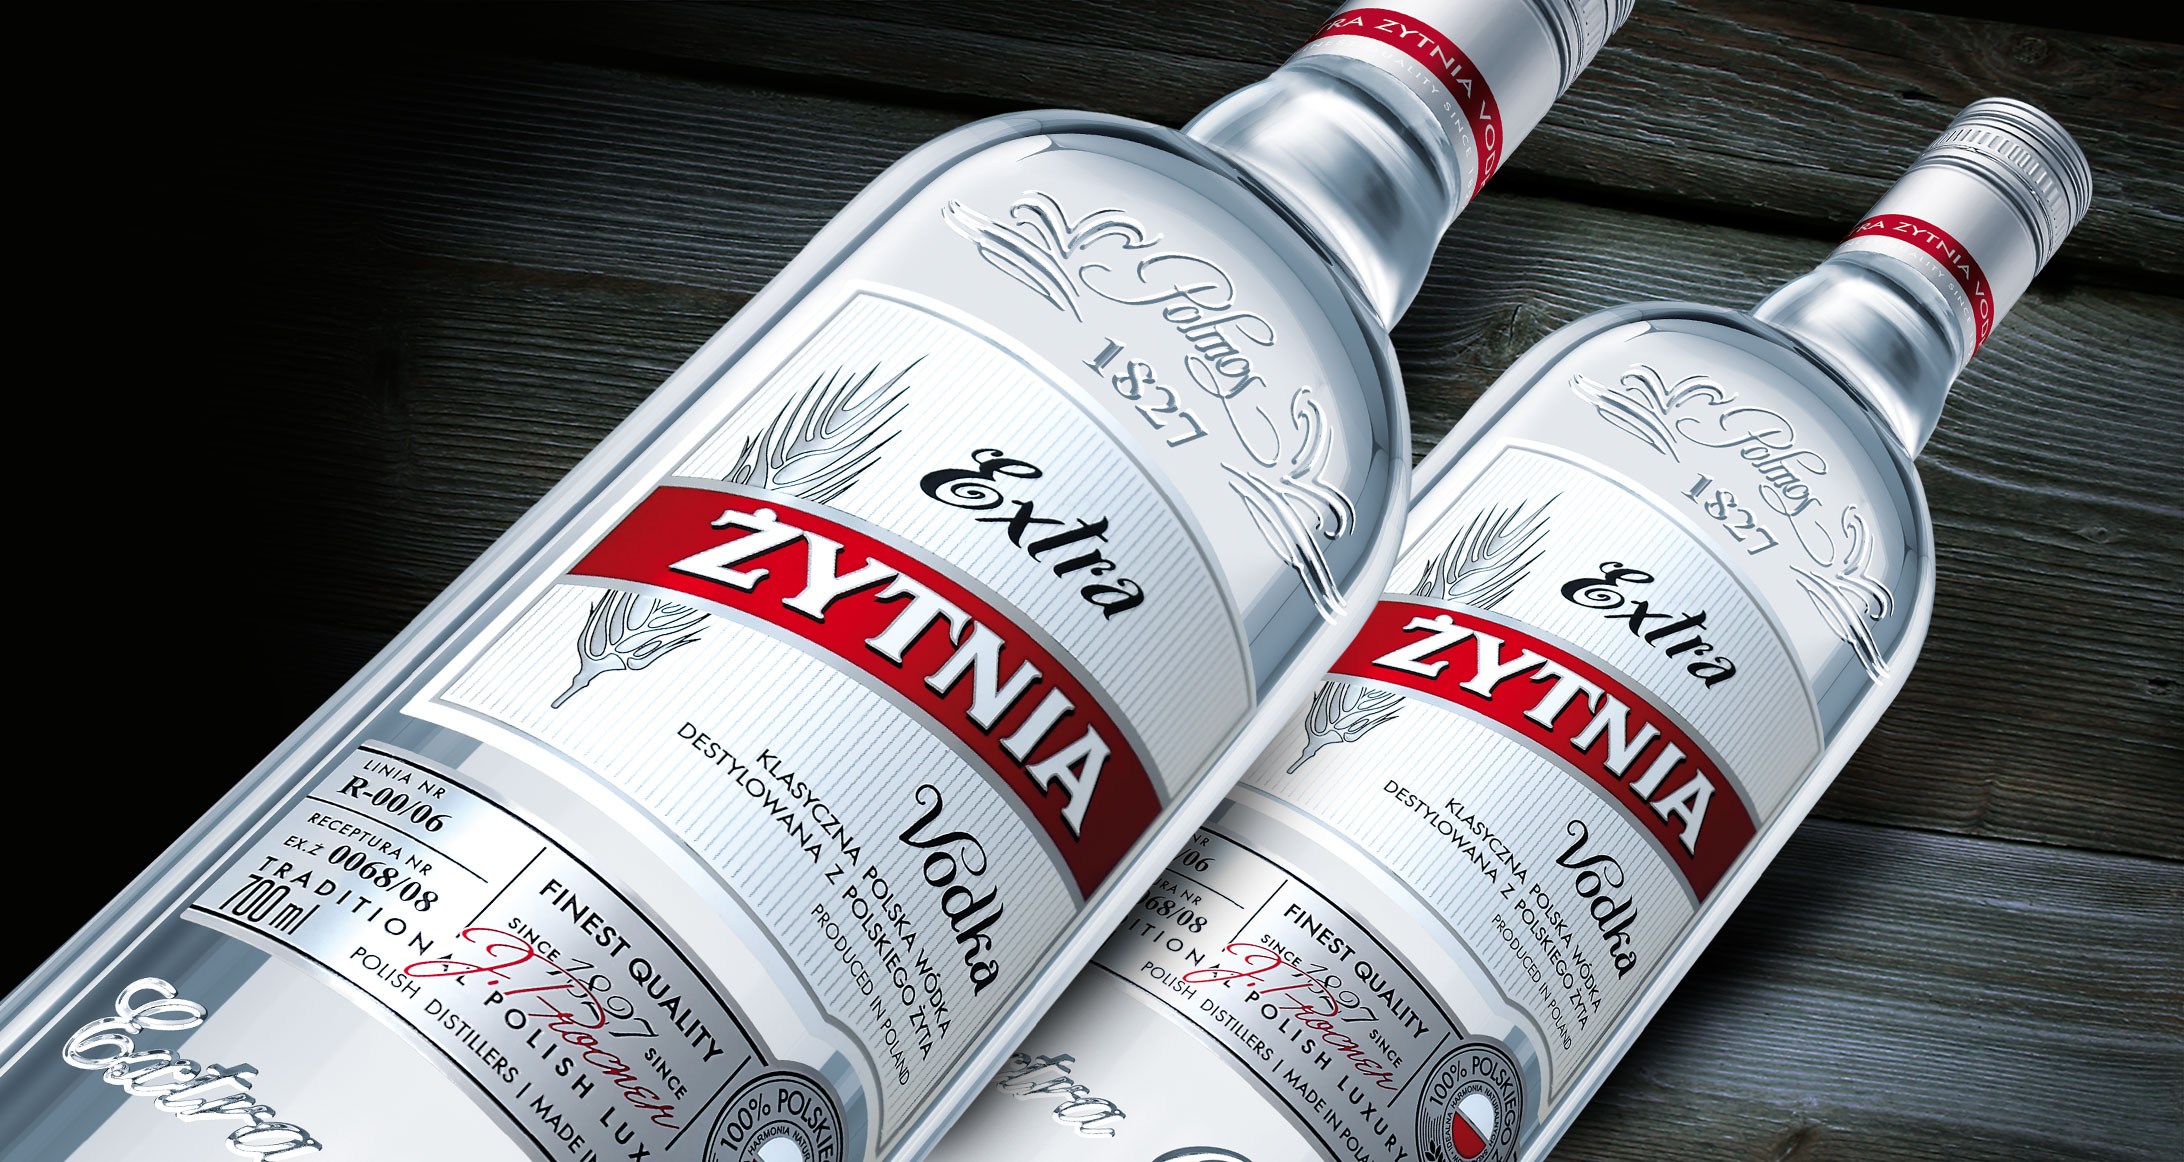 żytnia vodka packaging facelift